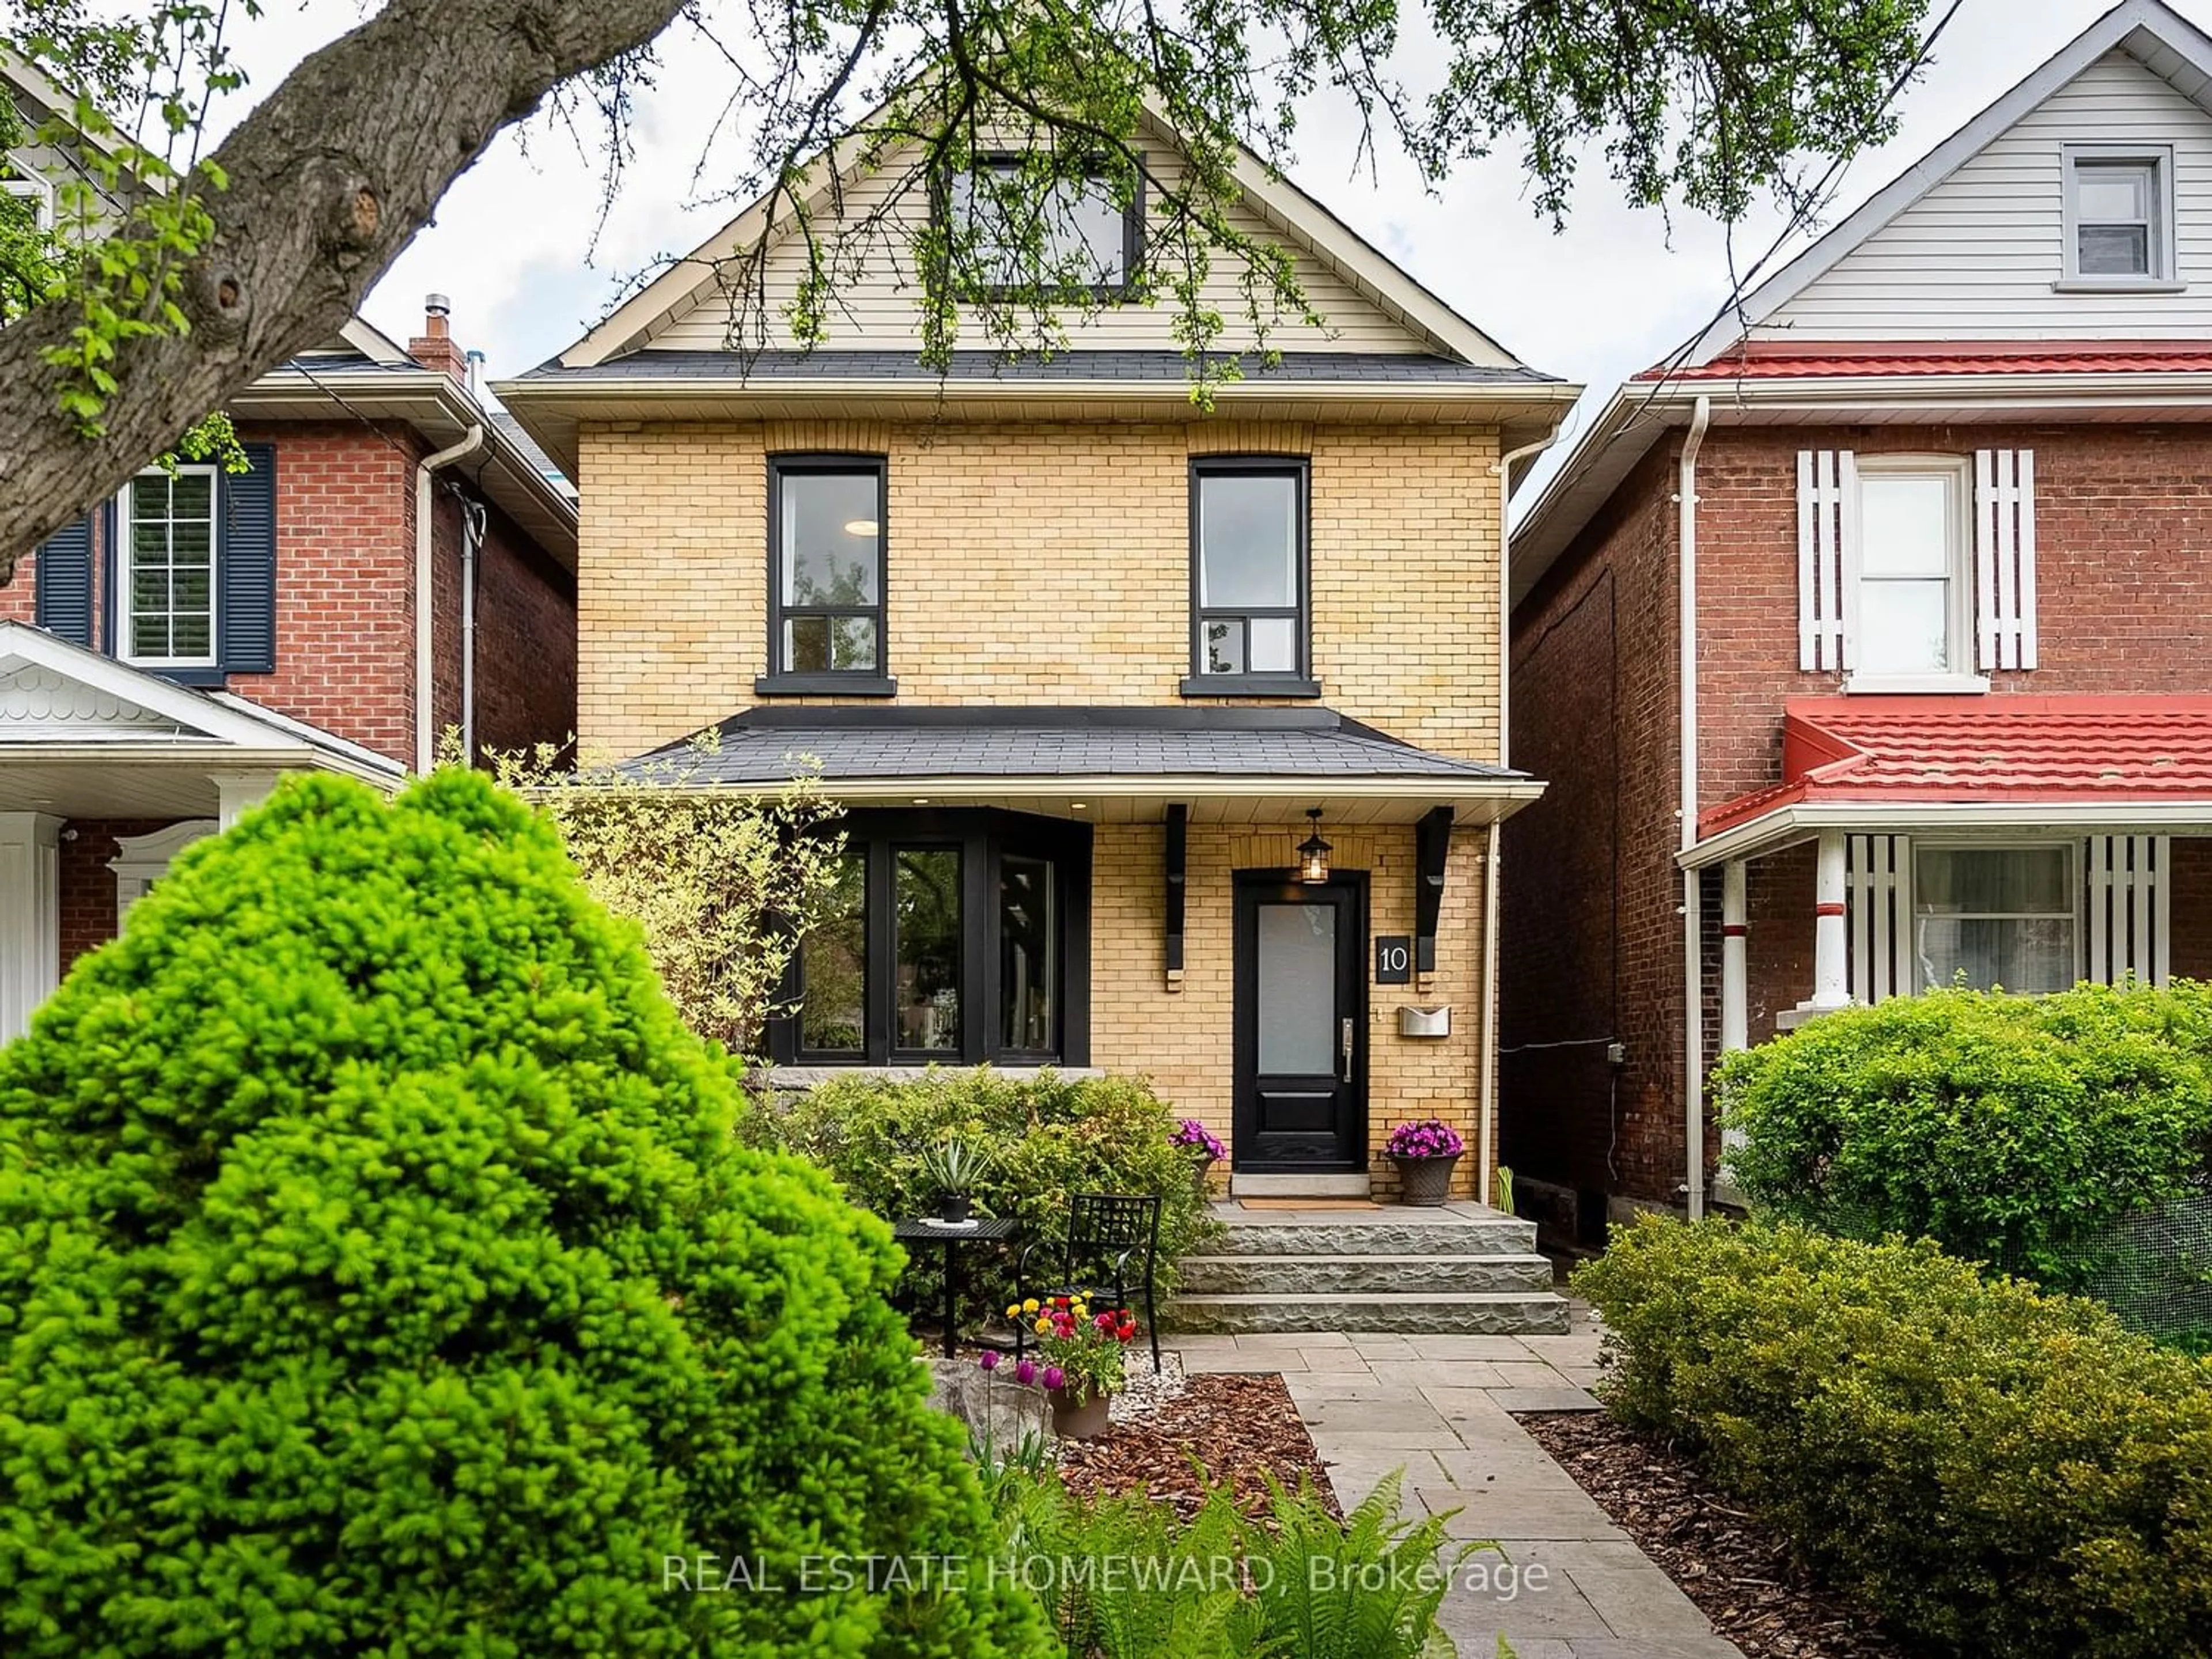 Home with brick exterior material for 10 Osborne Ave, Toronto Ontario M4E 3A9